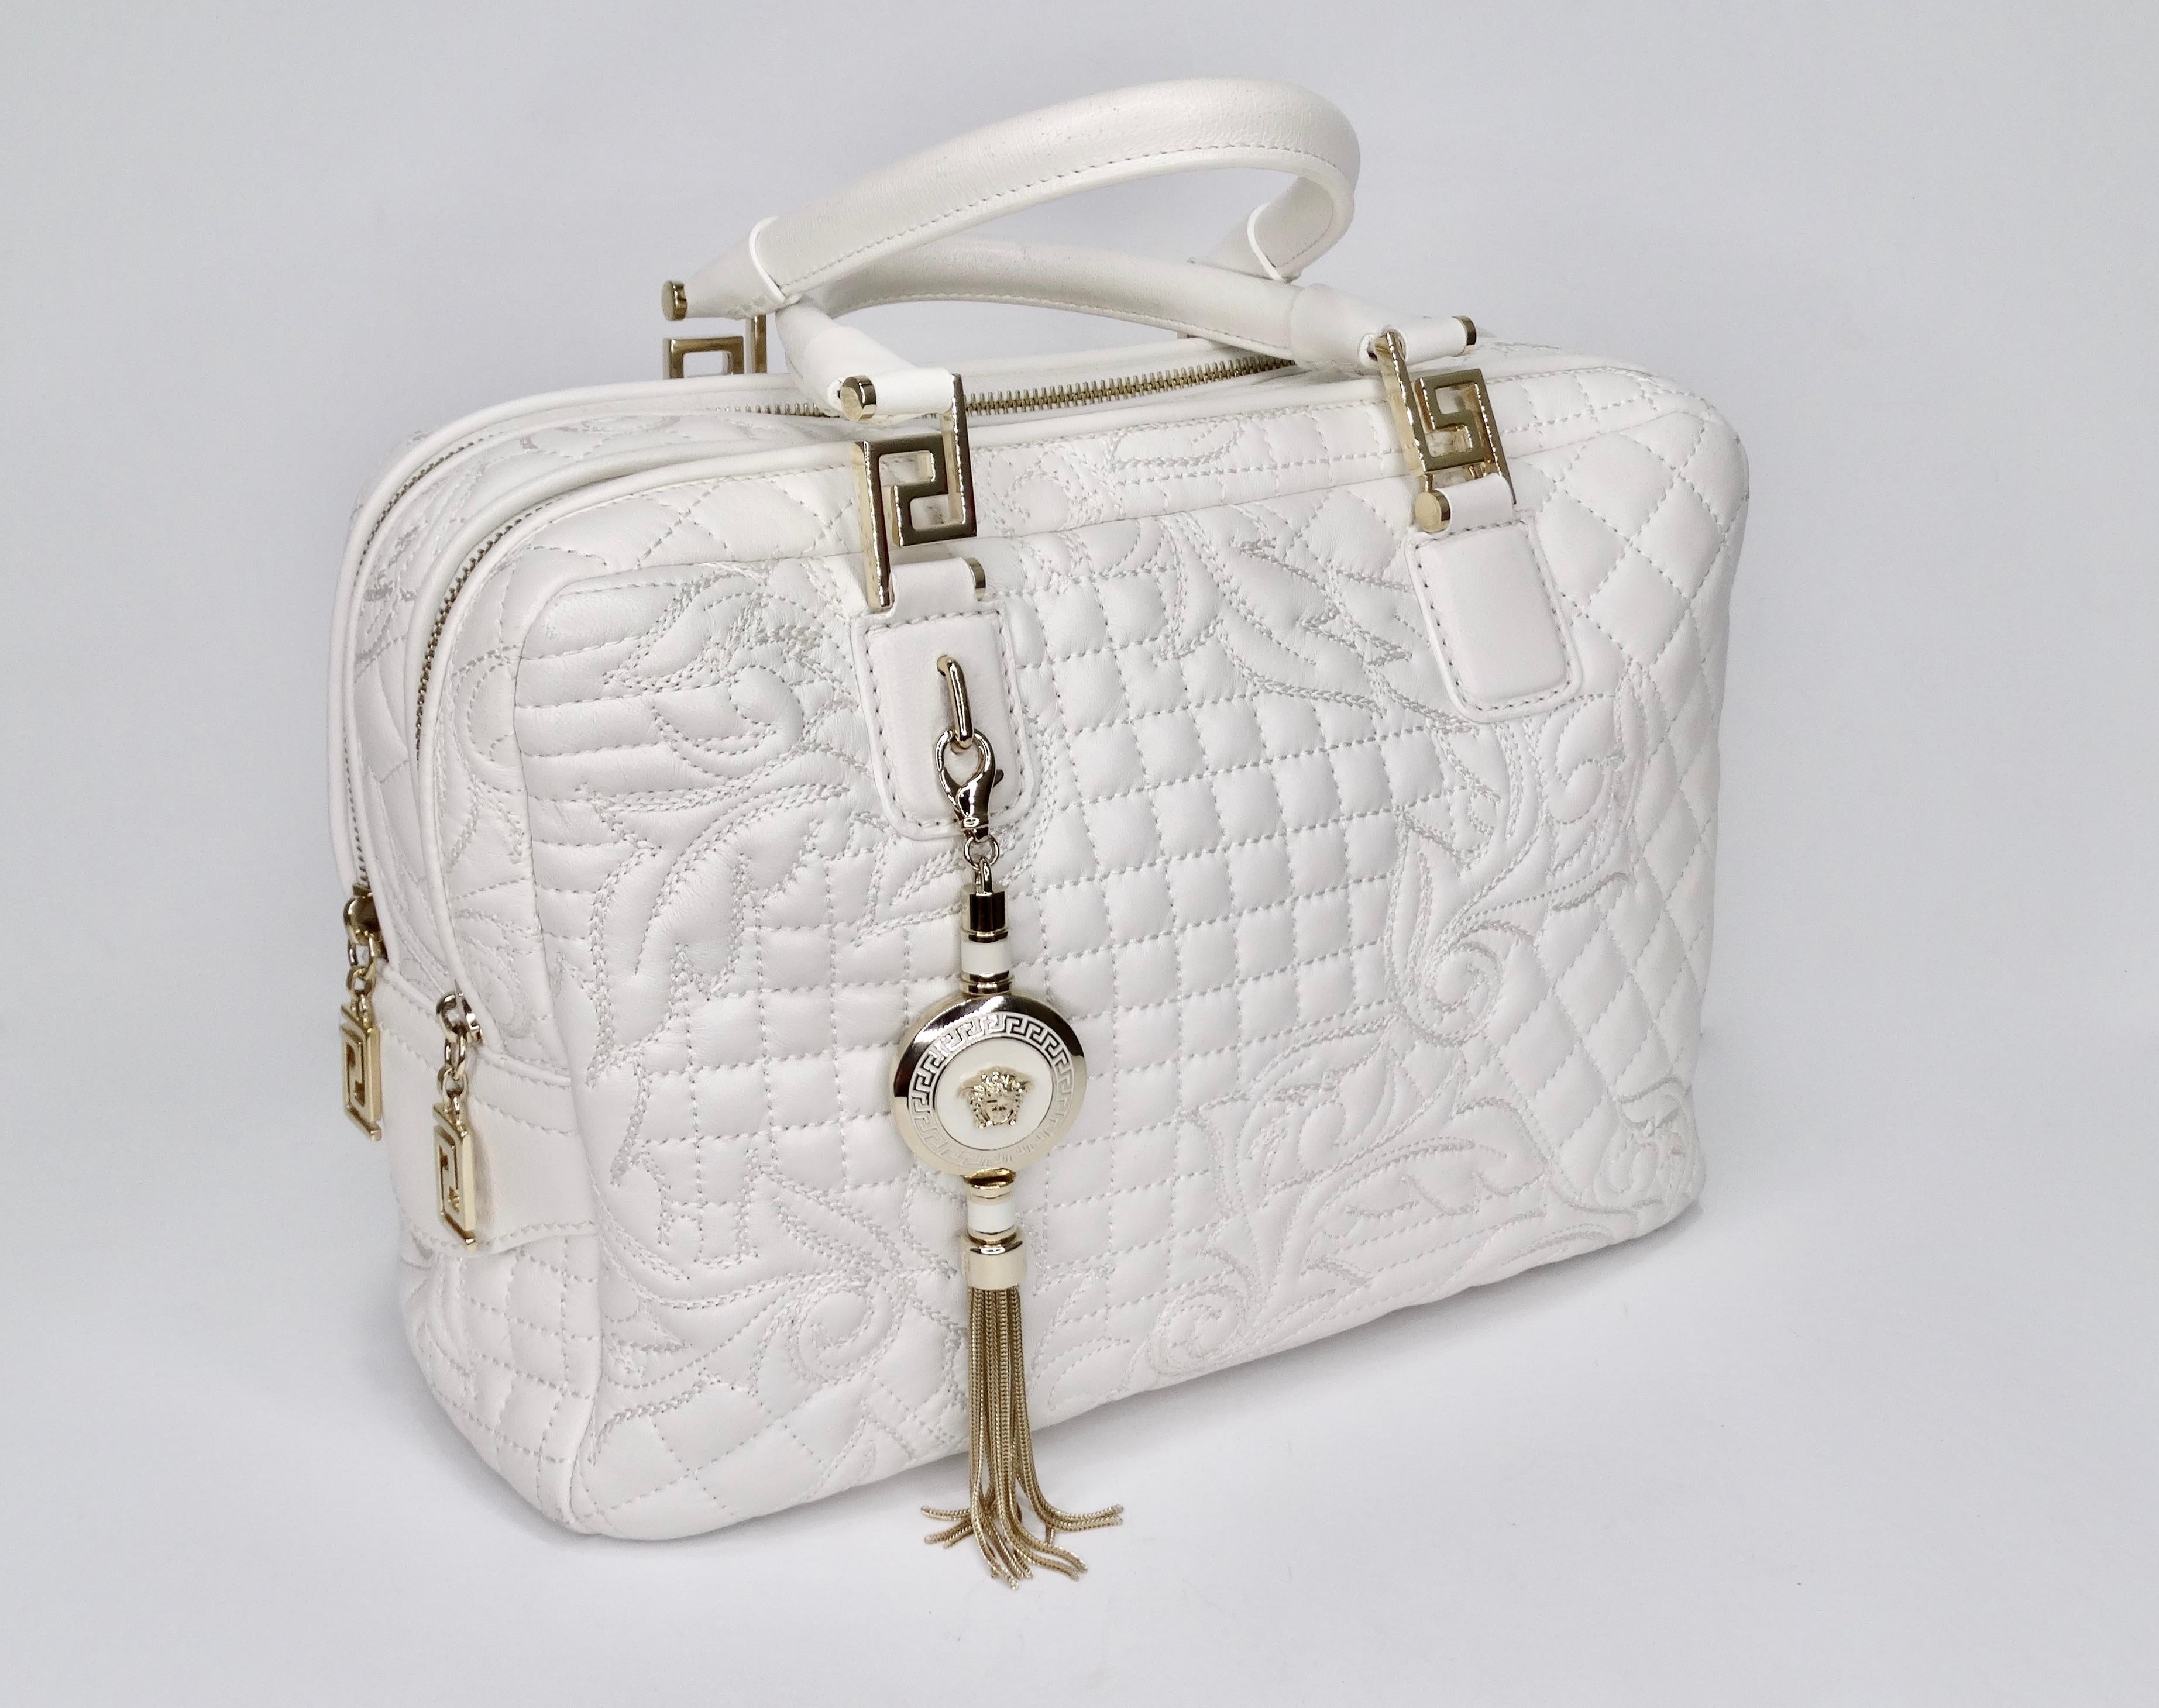 Appel à tous les amoureux de Versace ! Datant du milieu des années 2000, ce sac à main est fabriqué en cuir blanc et présente des surpiqûres avec le motif baroque signé Versace, deux poignées roulées, une bandoulière optionnelle, des éléments de